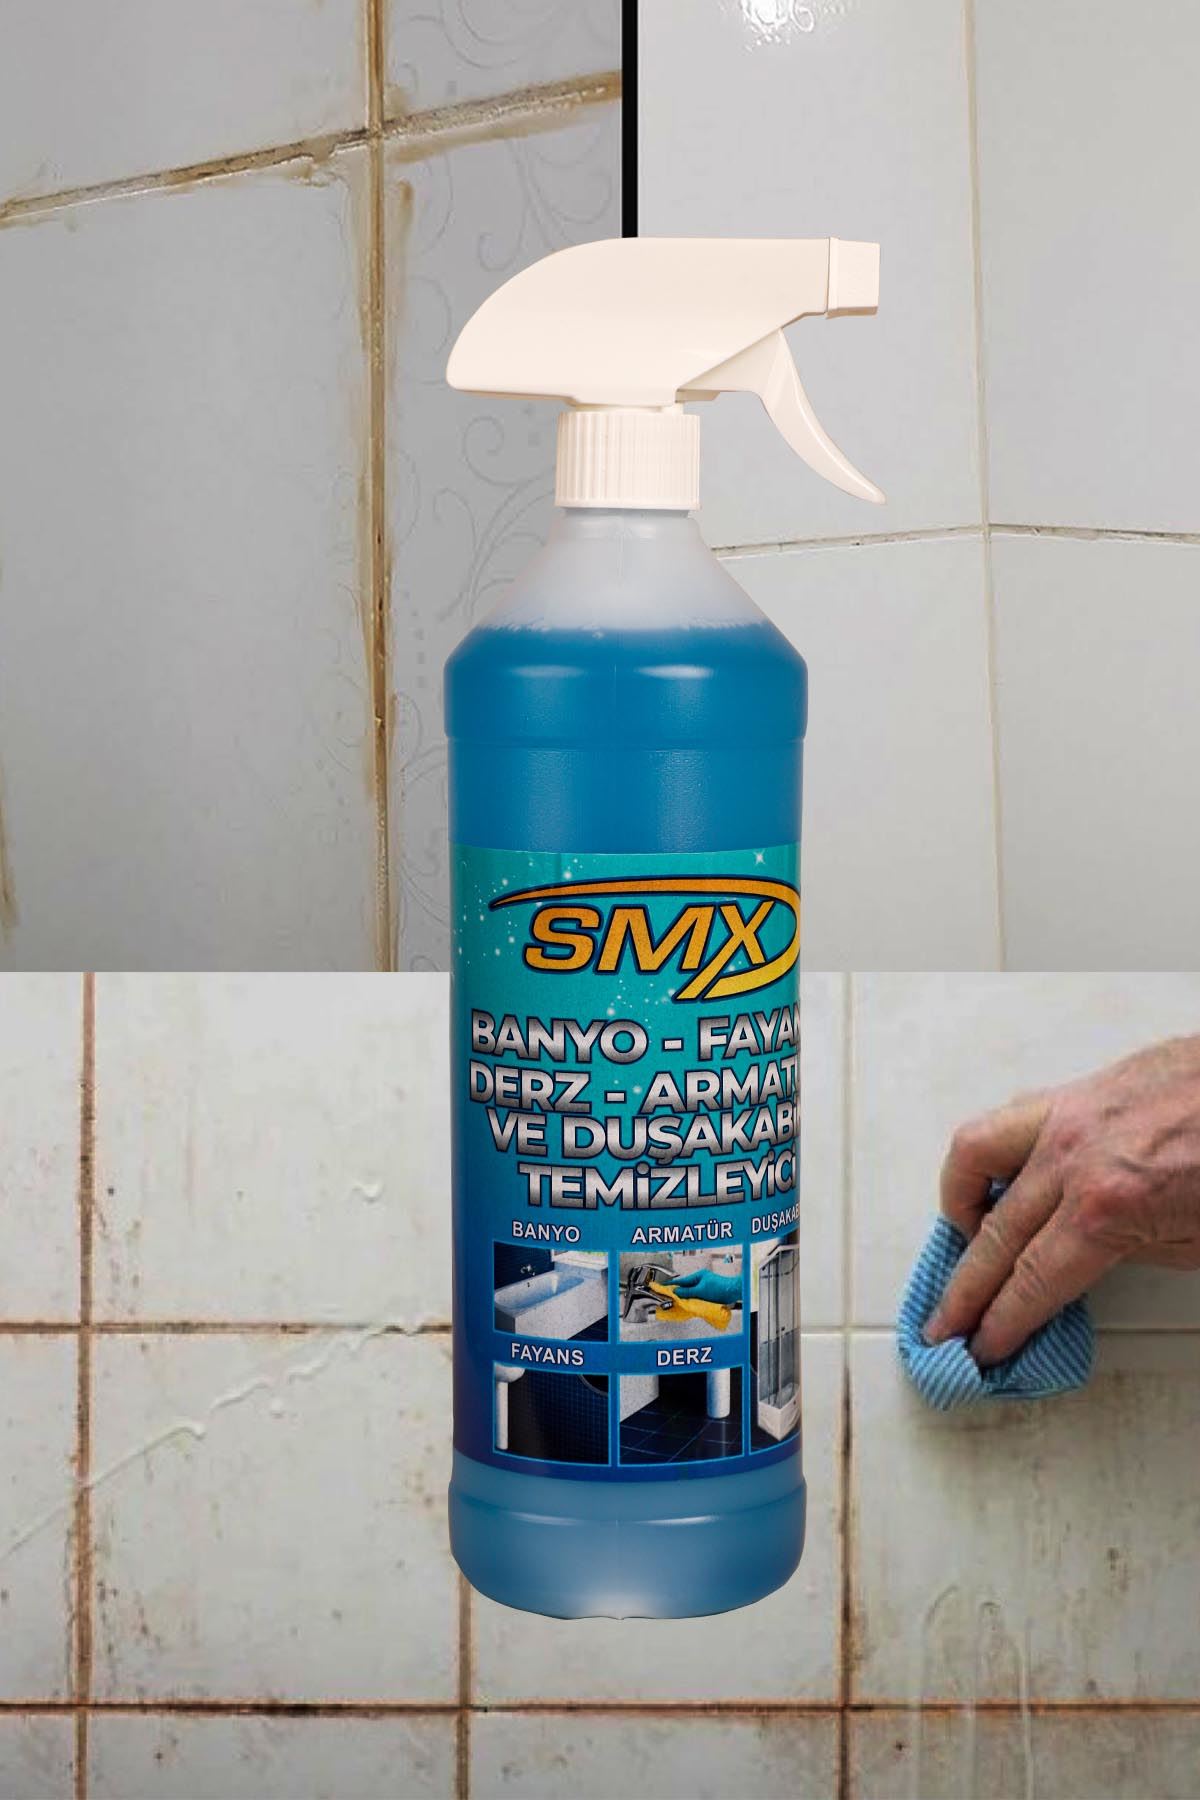 SMX Seramik Cila / Hızlı Cila / Pratik Cila / Nano Genel Amaçlı Temizleyici / Banyo Temizleyici / Fayans Temizleyici / Derz Temizleyici